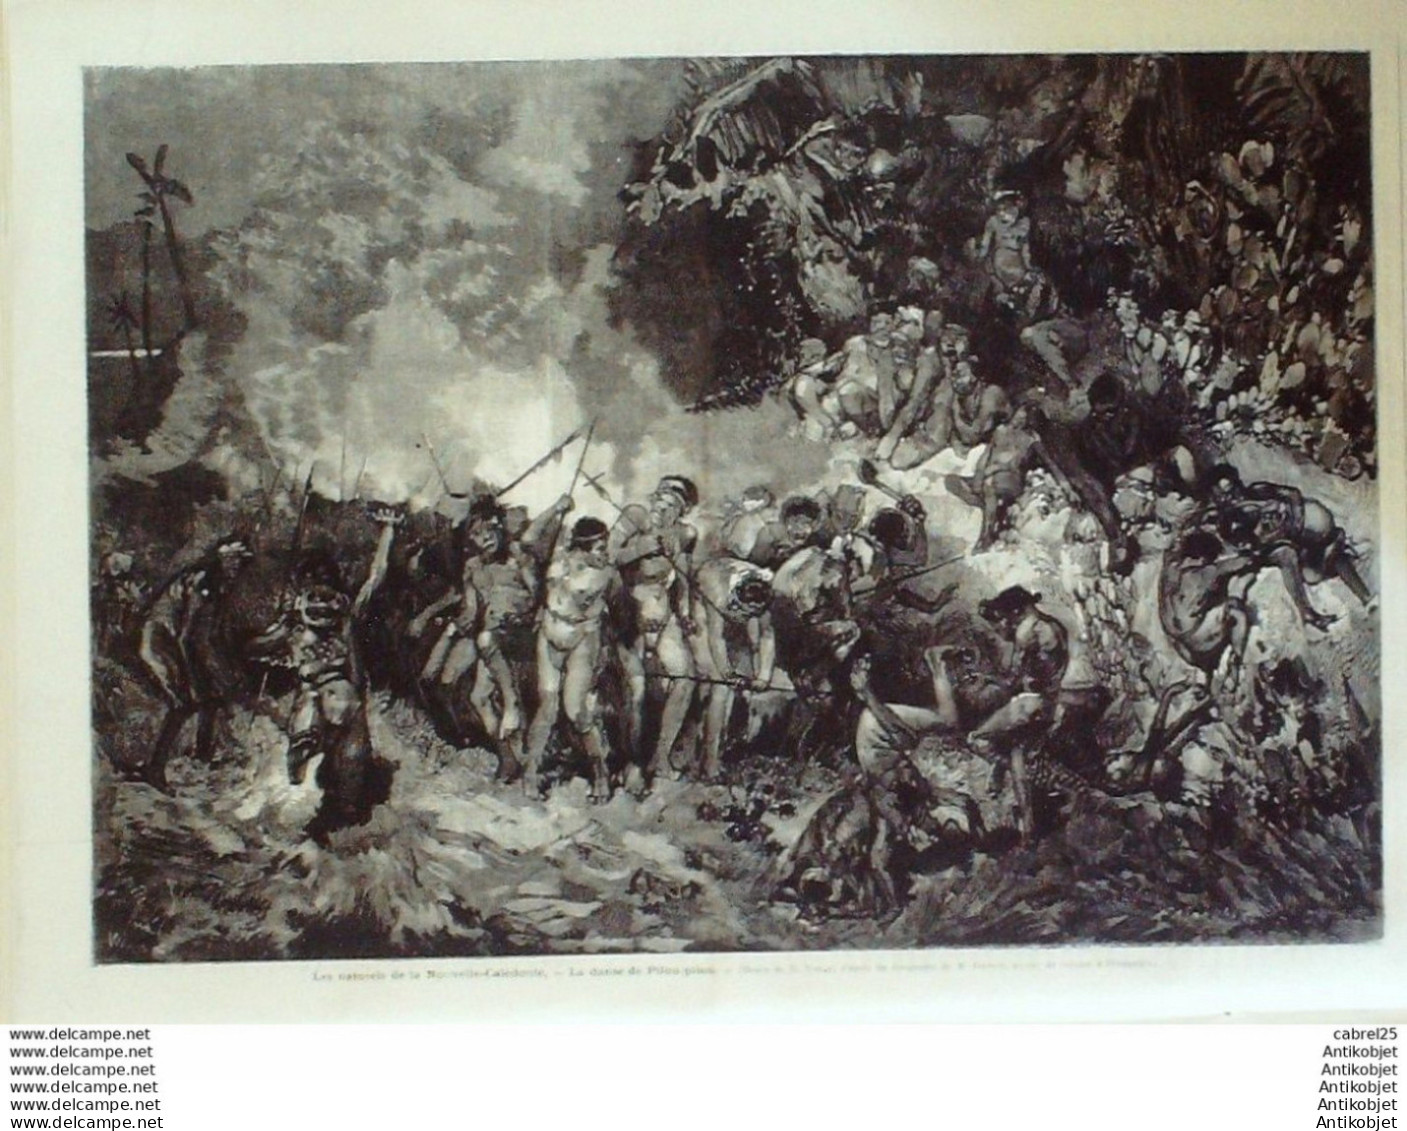 Le Monde Illustré 1872 N°772 Buzenval (92) Bataille Maréchal Prim Henri Regnault Fonderie Thiebault - 1850 - 1899